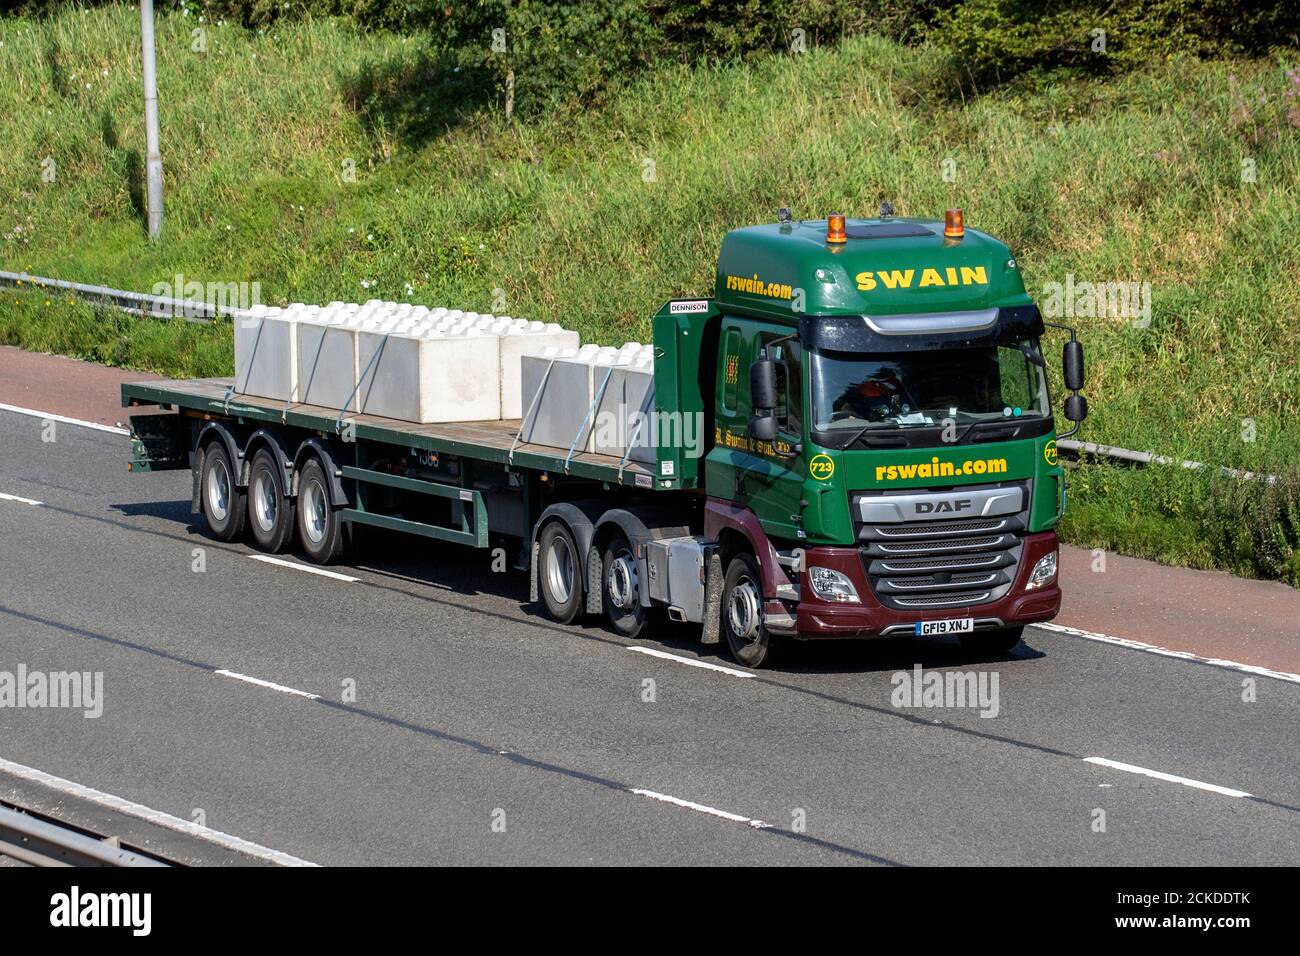 Camions de livraison Swain Haulage, camion surbaissé, transport, camion, transporteur de marchandises, Véhicule DAF, poids lourd de l'industrie européenne du transport commercial, M6 à Manchester, Royaume-Uni Banque D'Images